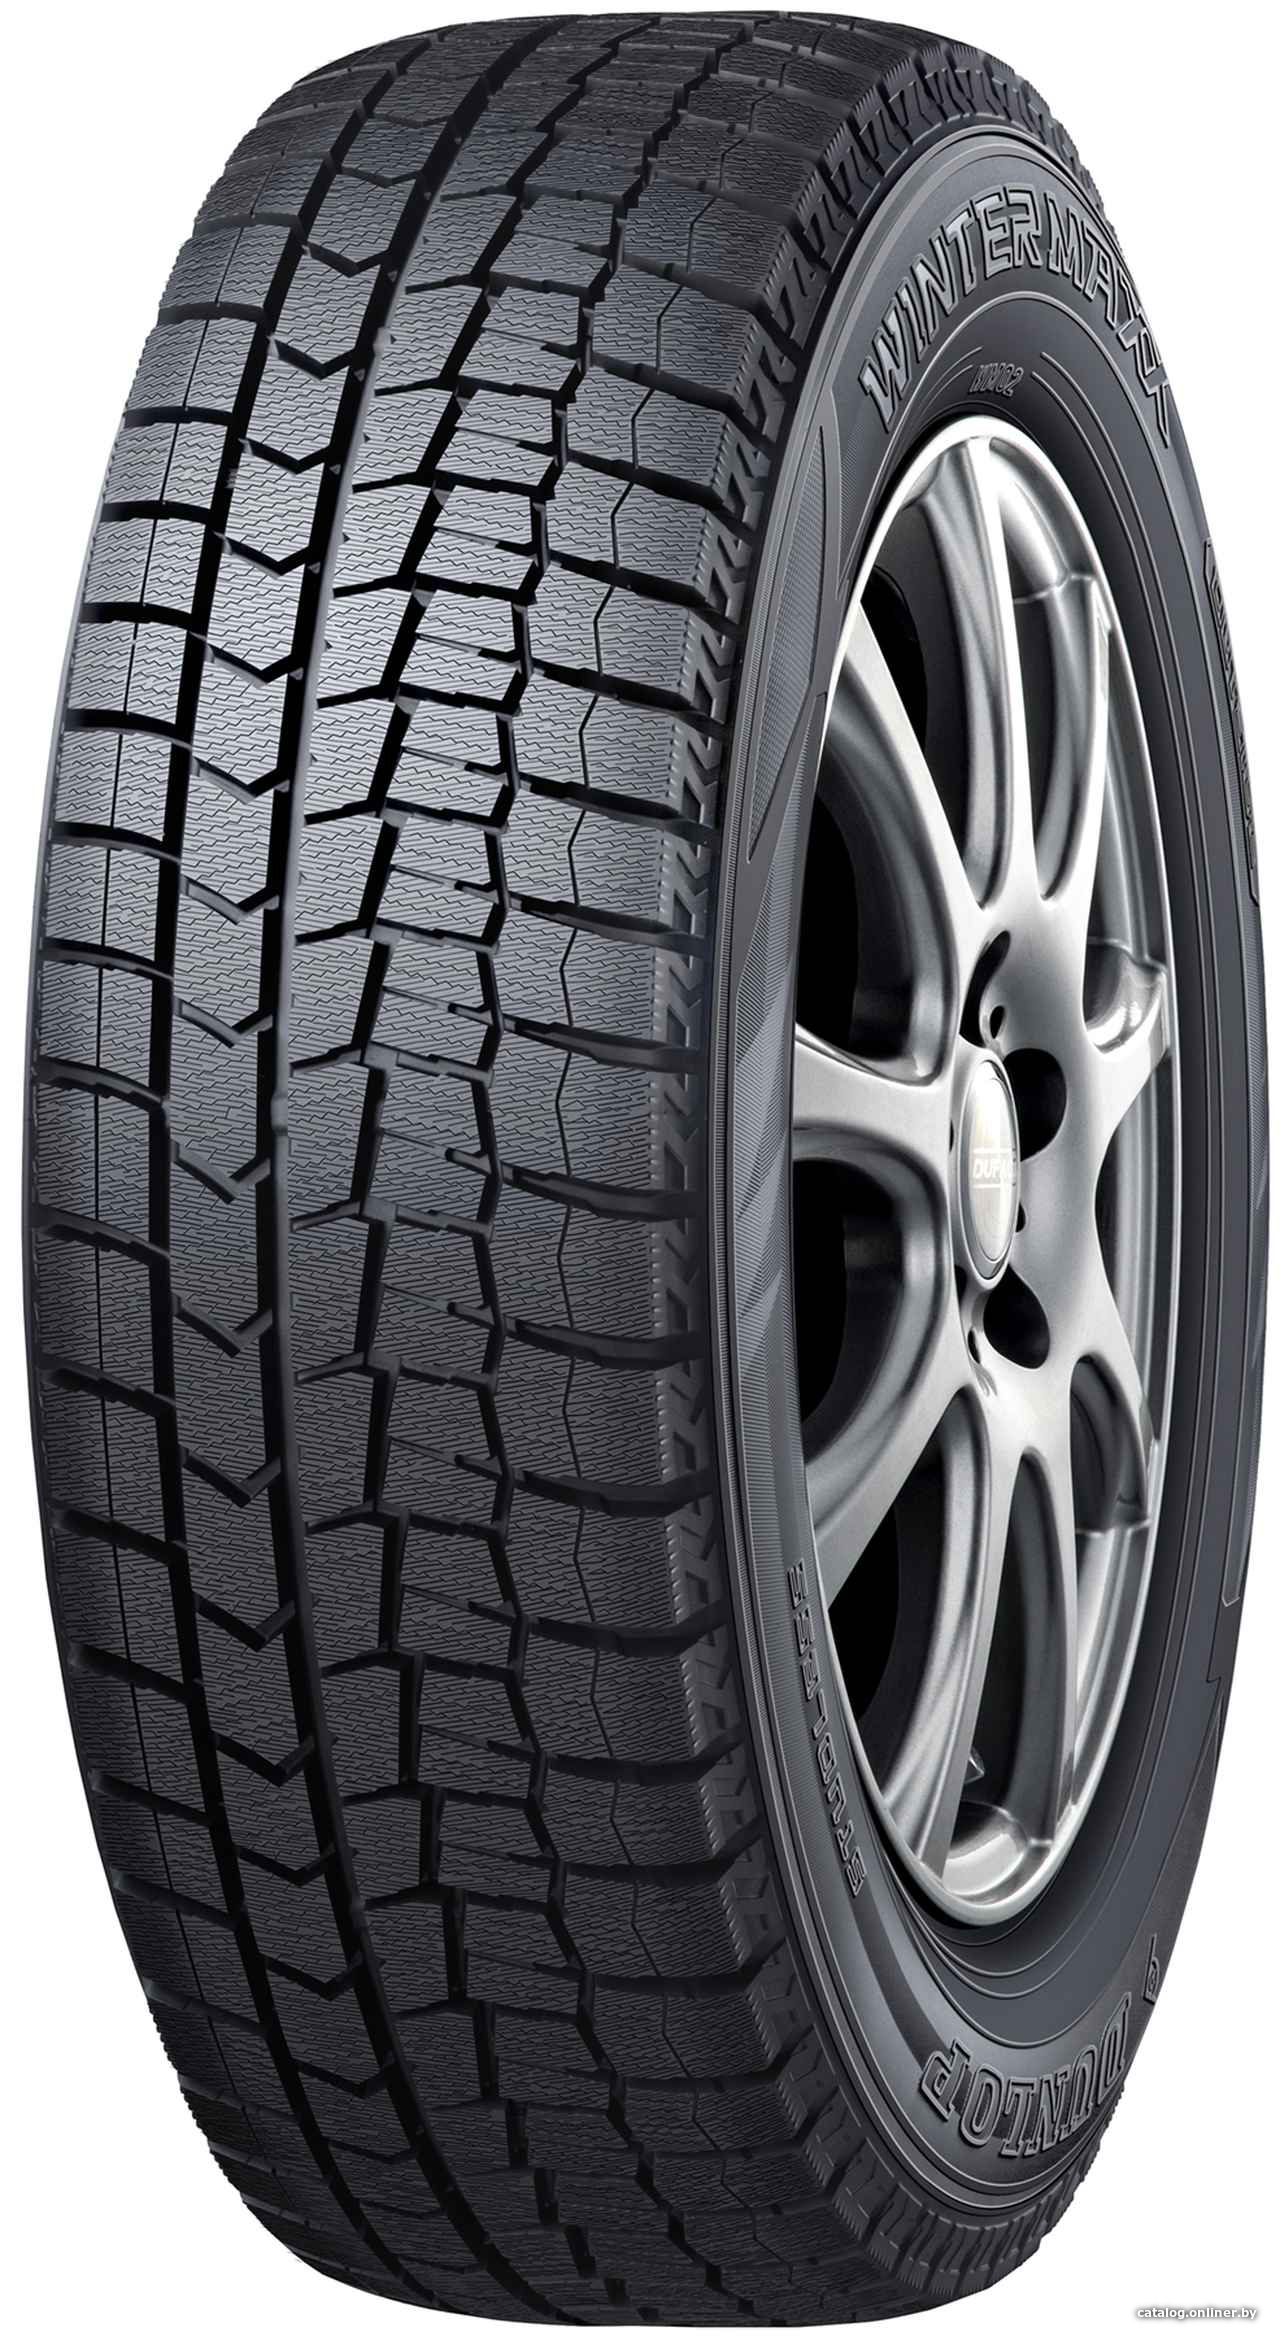 Автомобильные шины Dunlop Winter Maxx WM02 245/40R19 98T